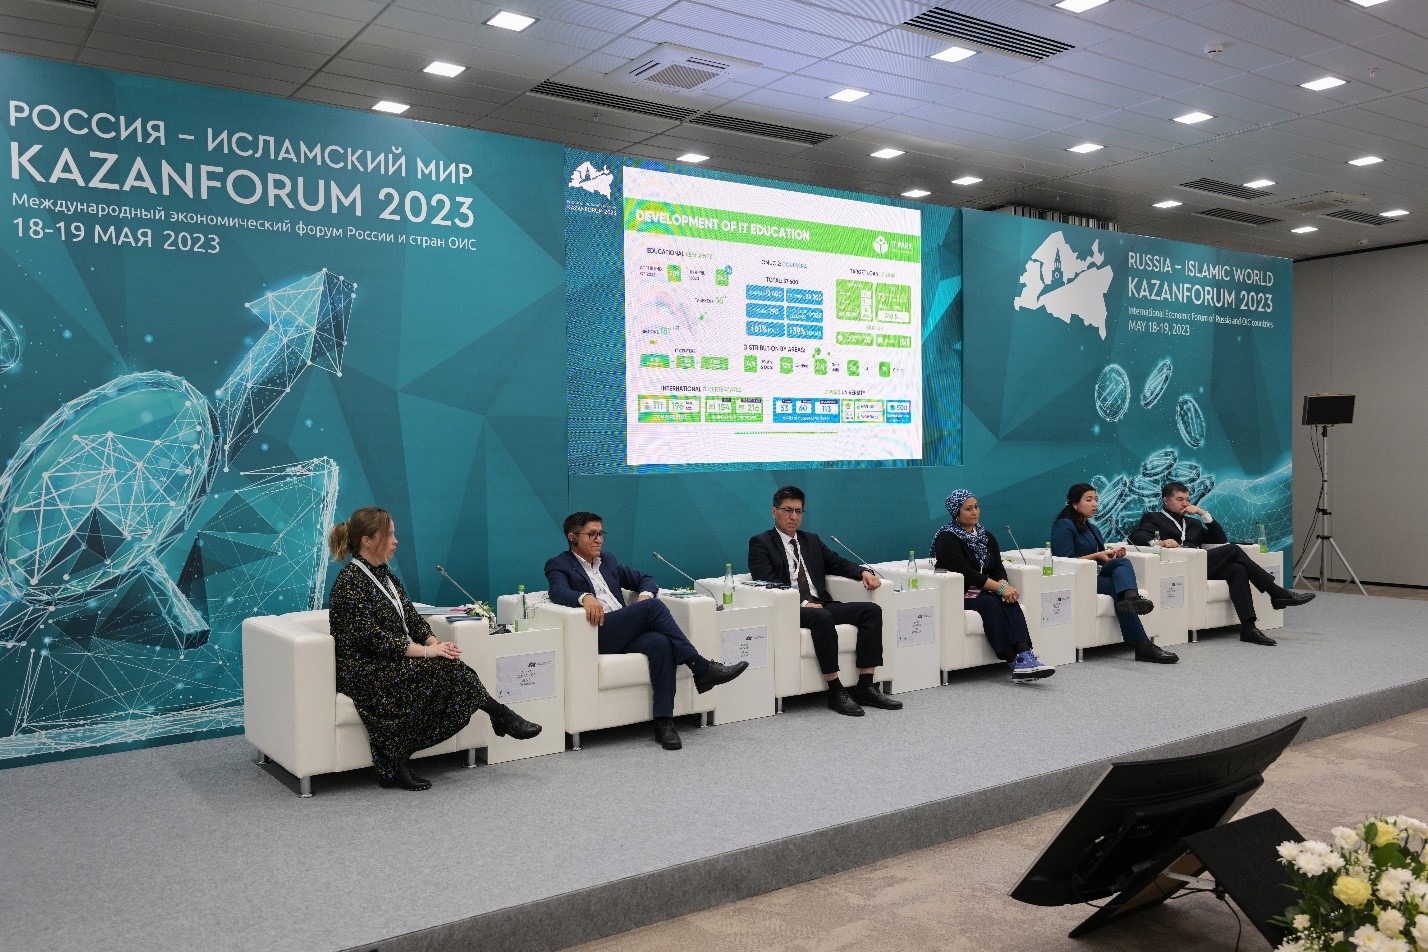 В рамках XVI Международного экономического форума «Россия – Исламский мир: KazanForum 2023» состоялась сессия по теме: «Международная программа развития навыков и профессий»